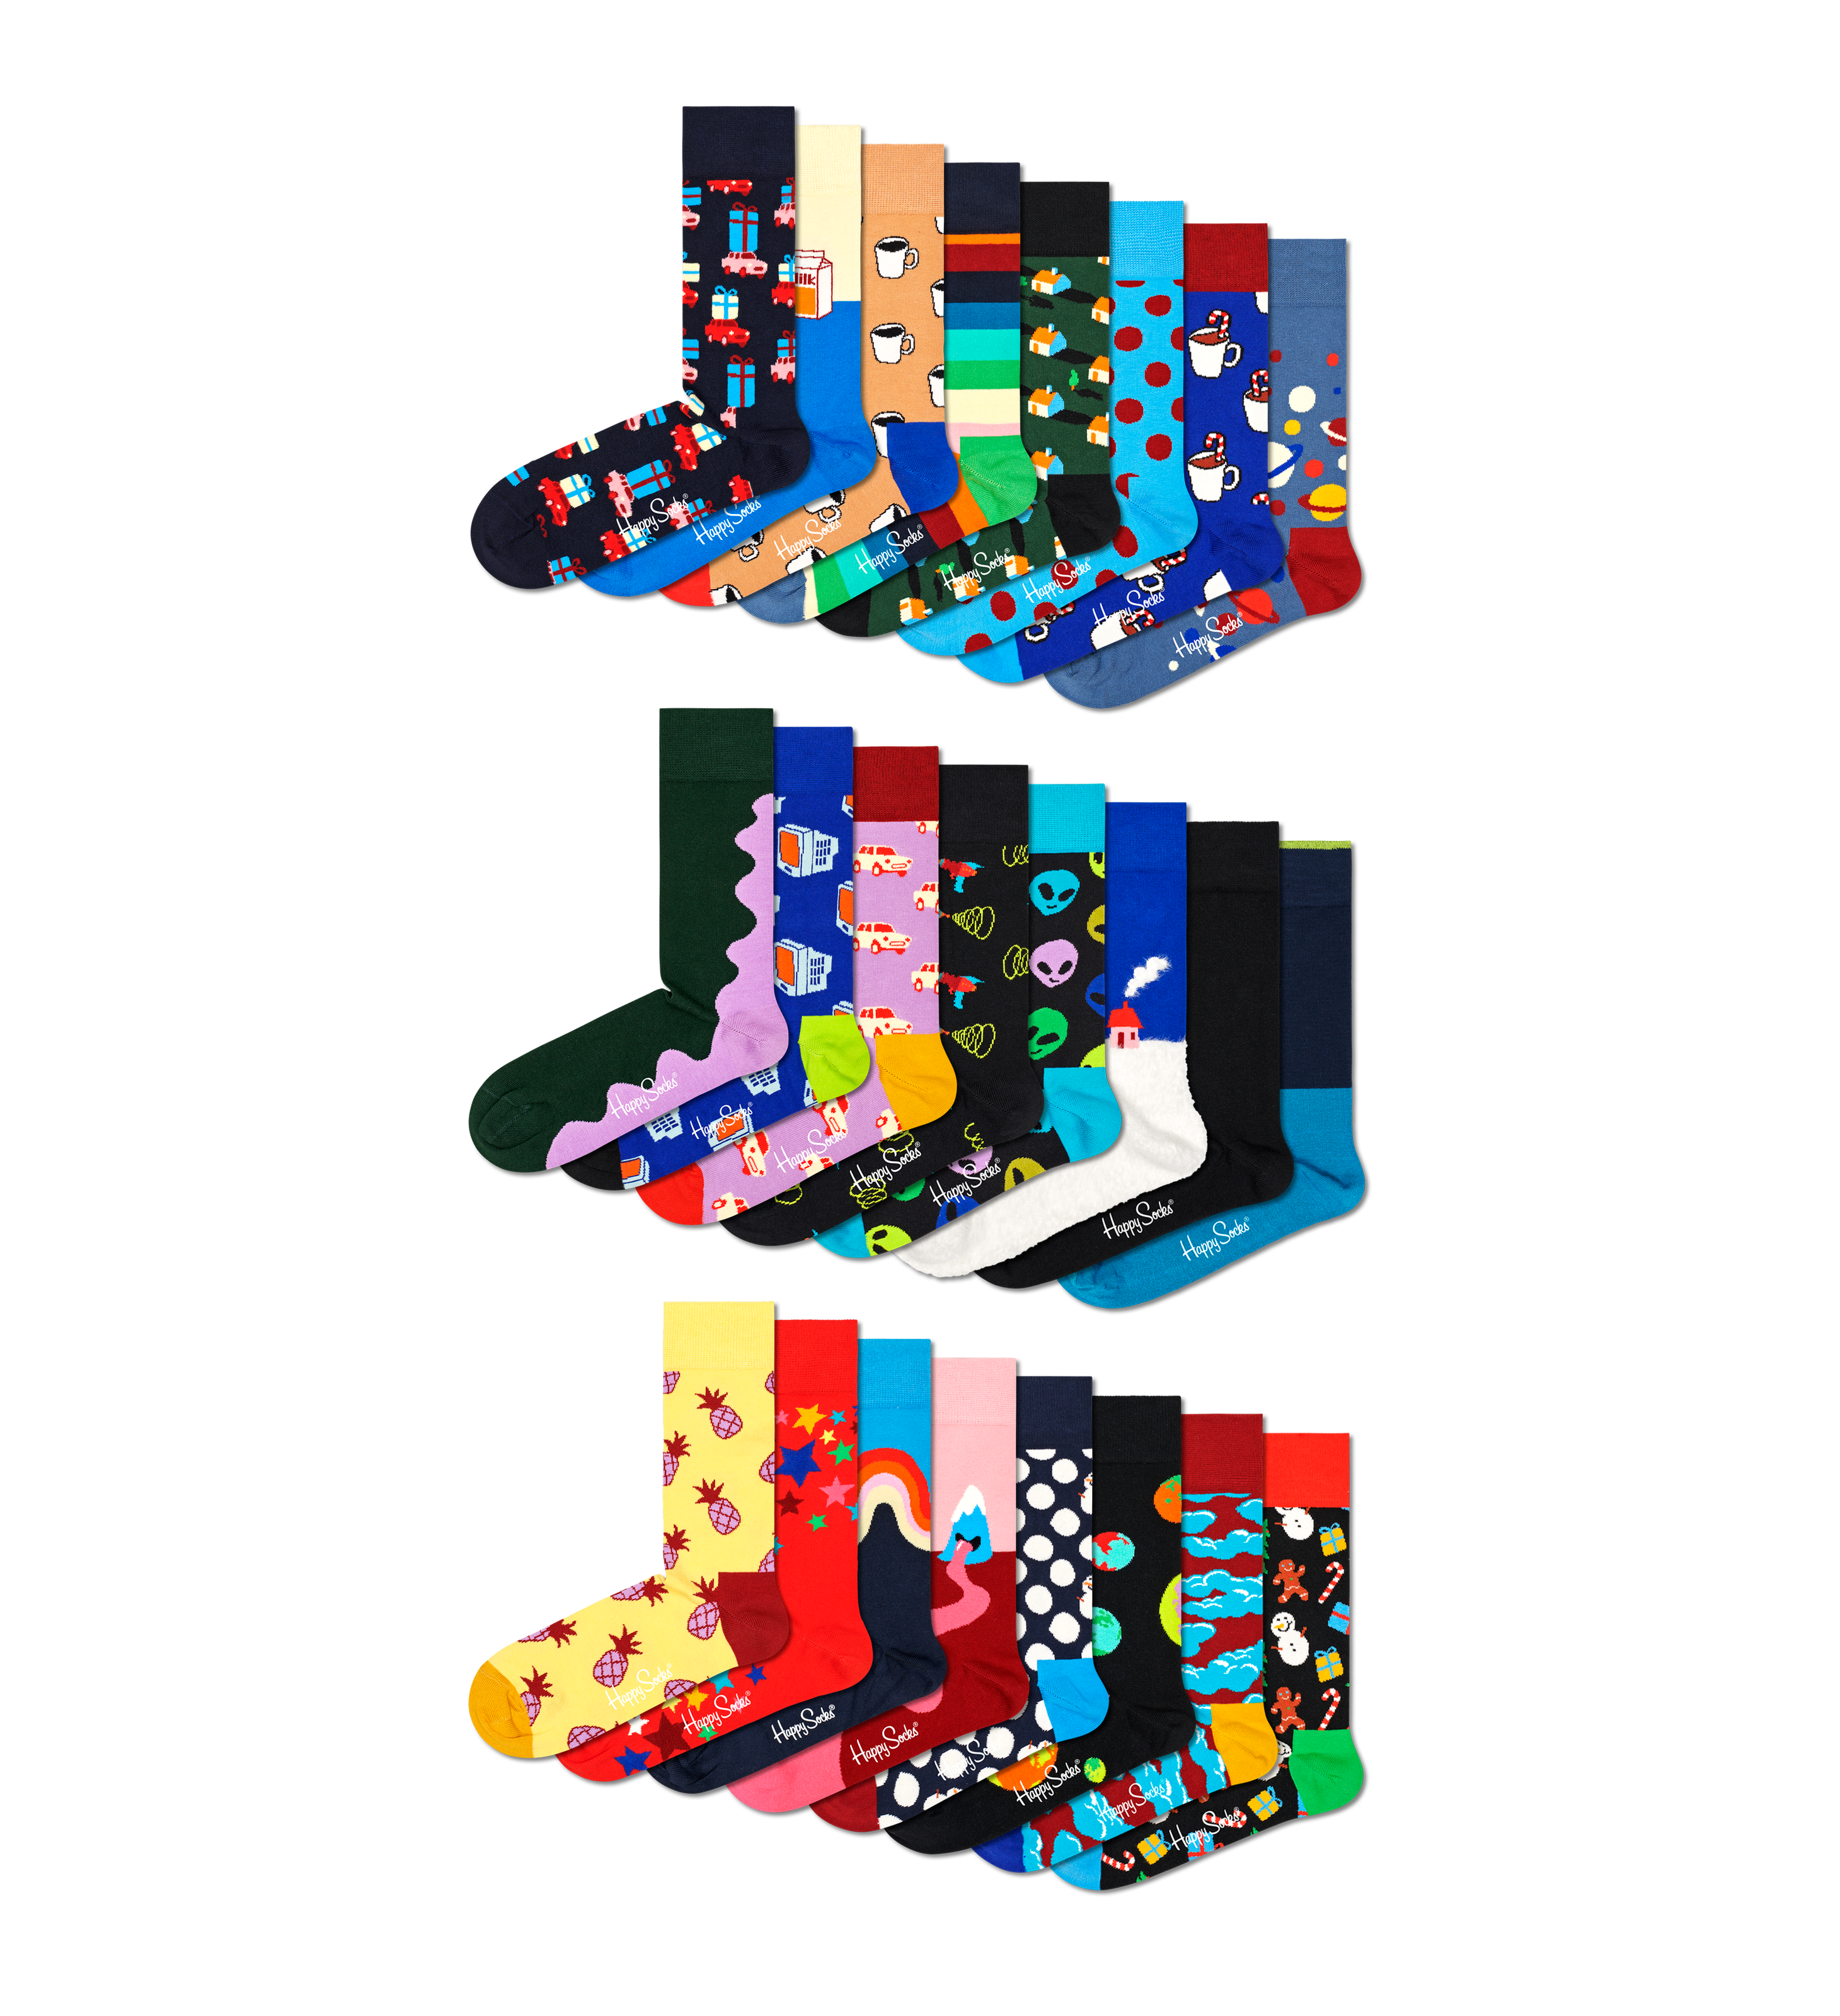 Happy Socks Happy Socks Happy - Socks